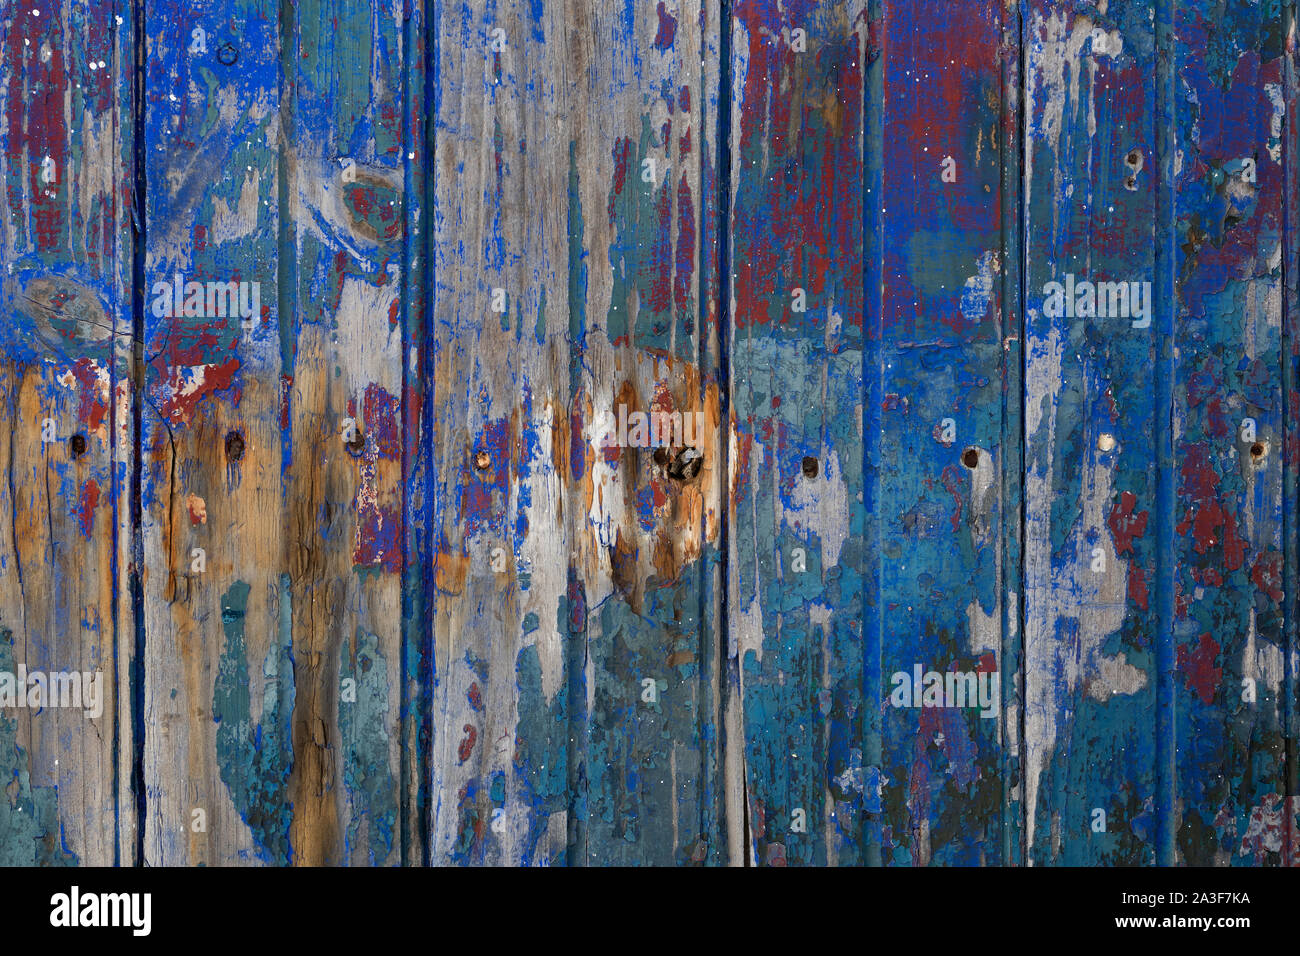 Alte hölzerne grungy texturierte Zaun mit gebrochenen Farben full frame Stockfoto